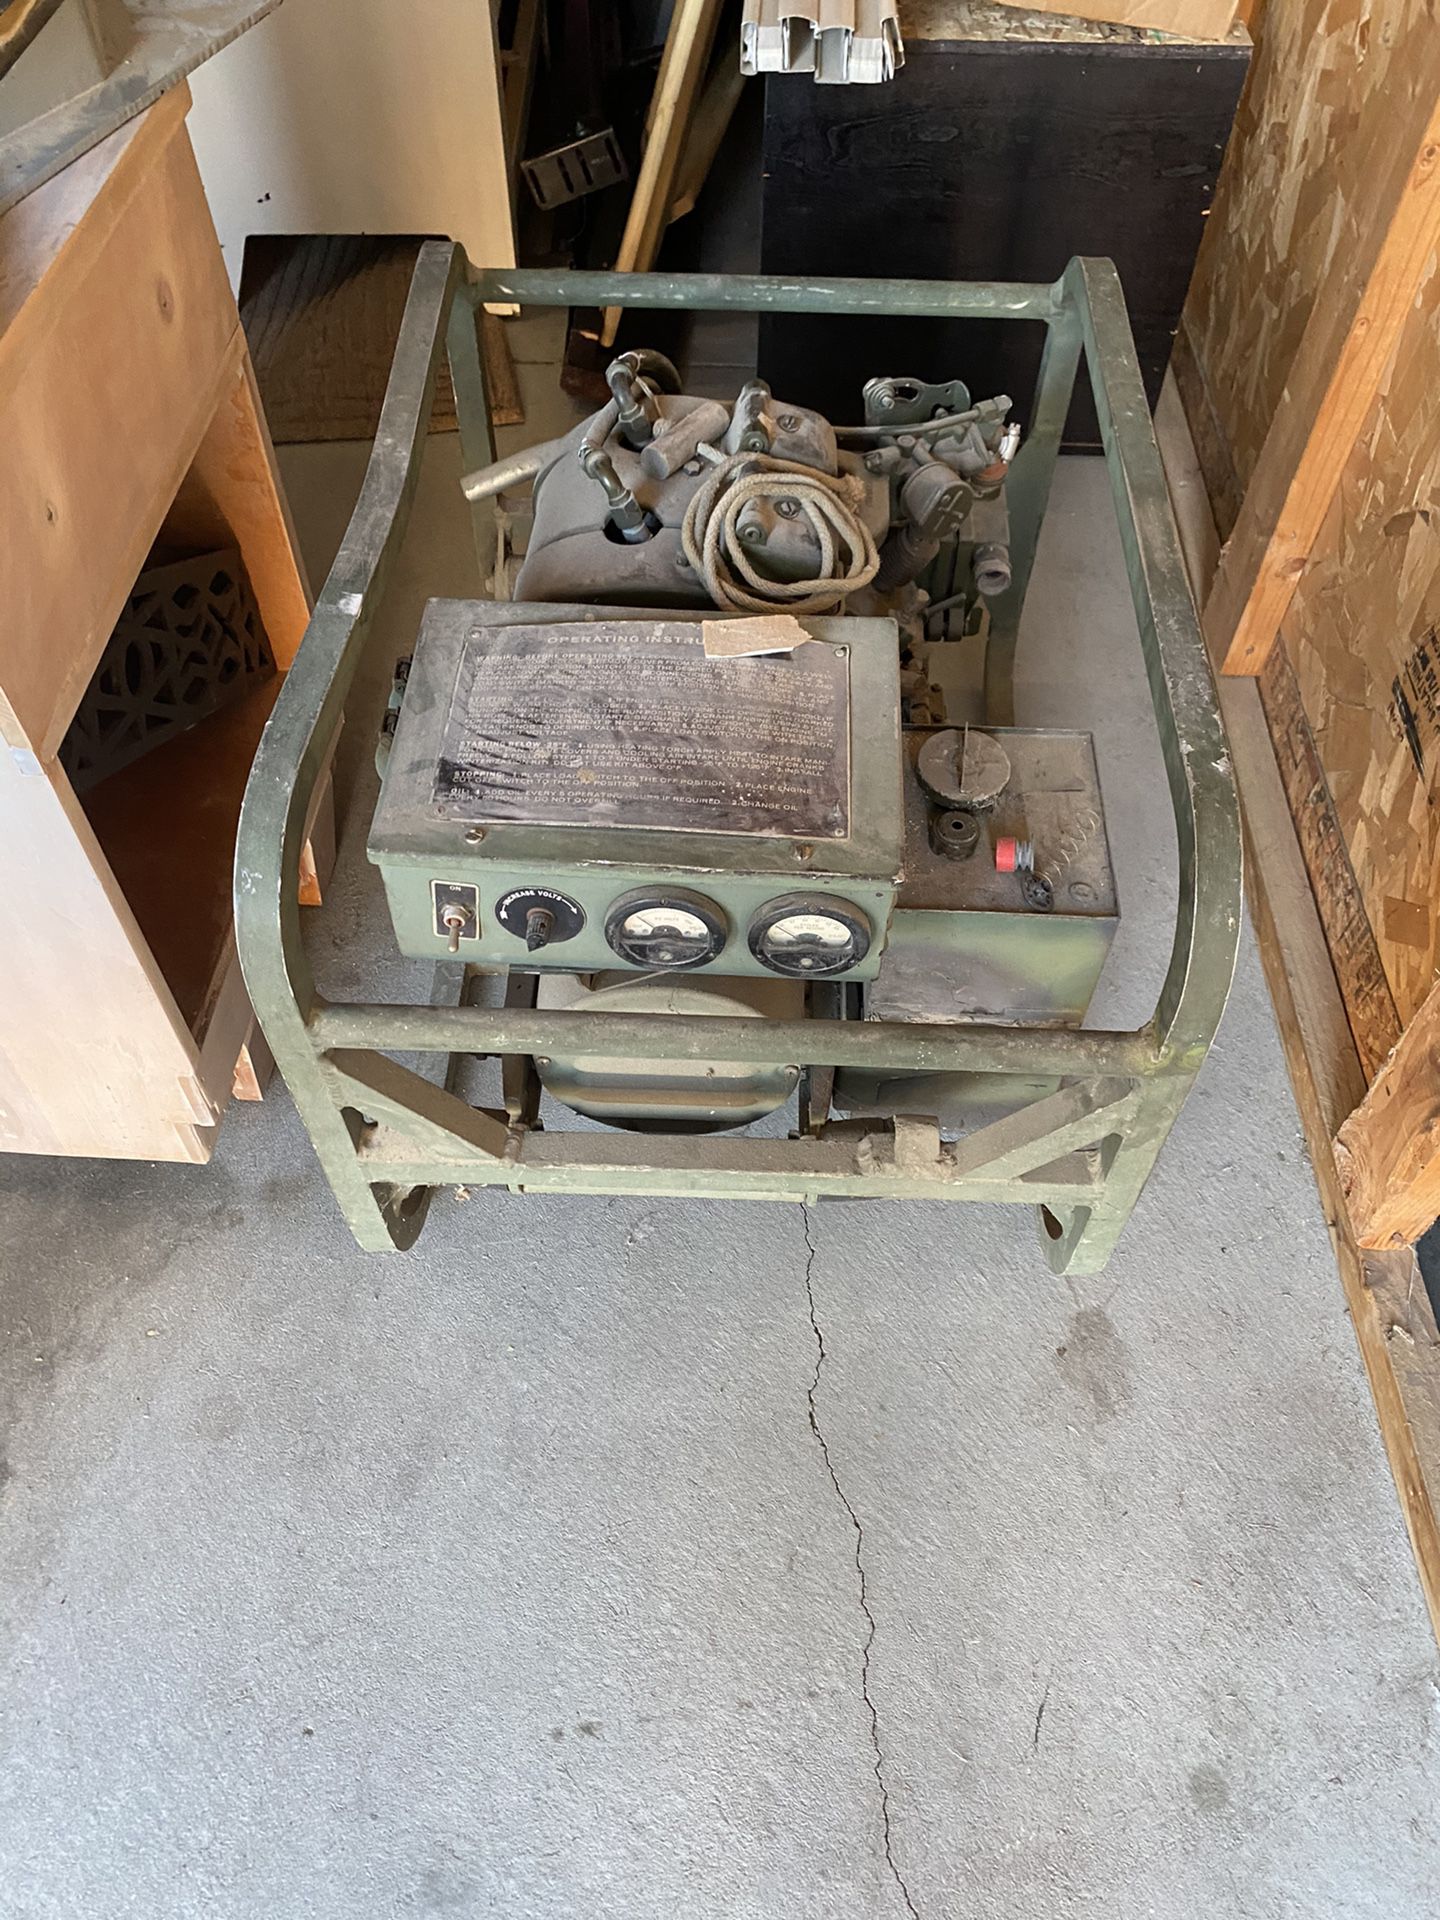 Older generator 2cylinder 